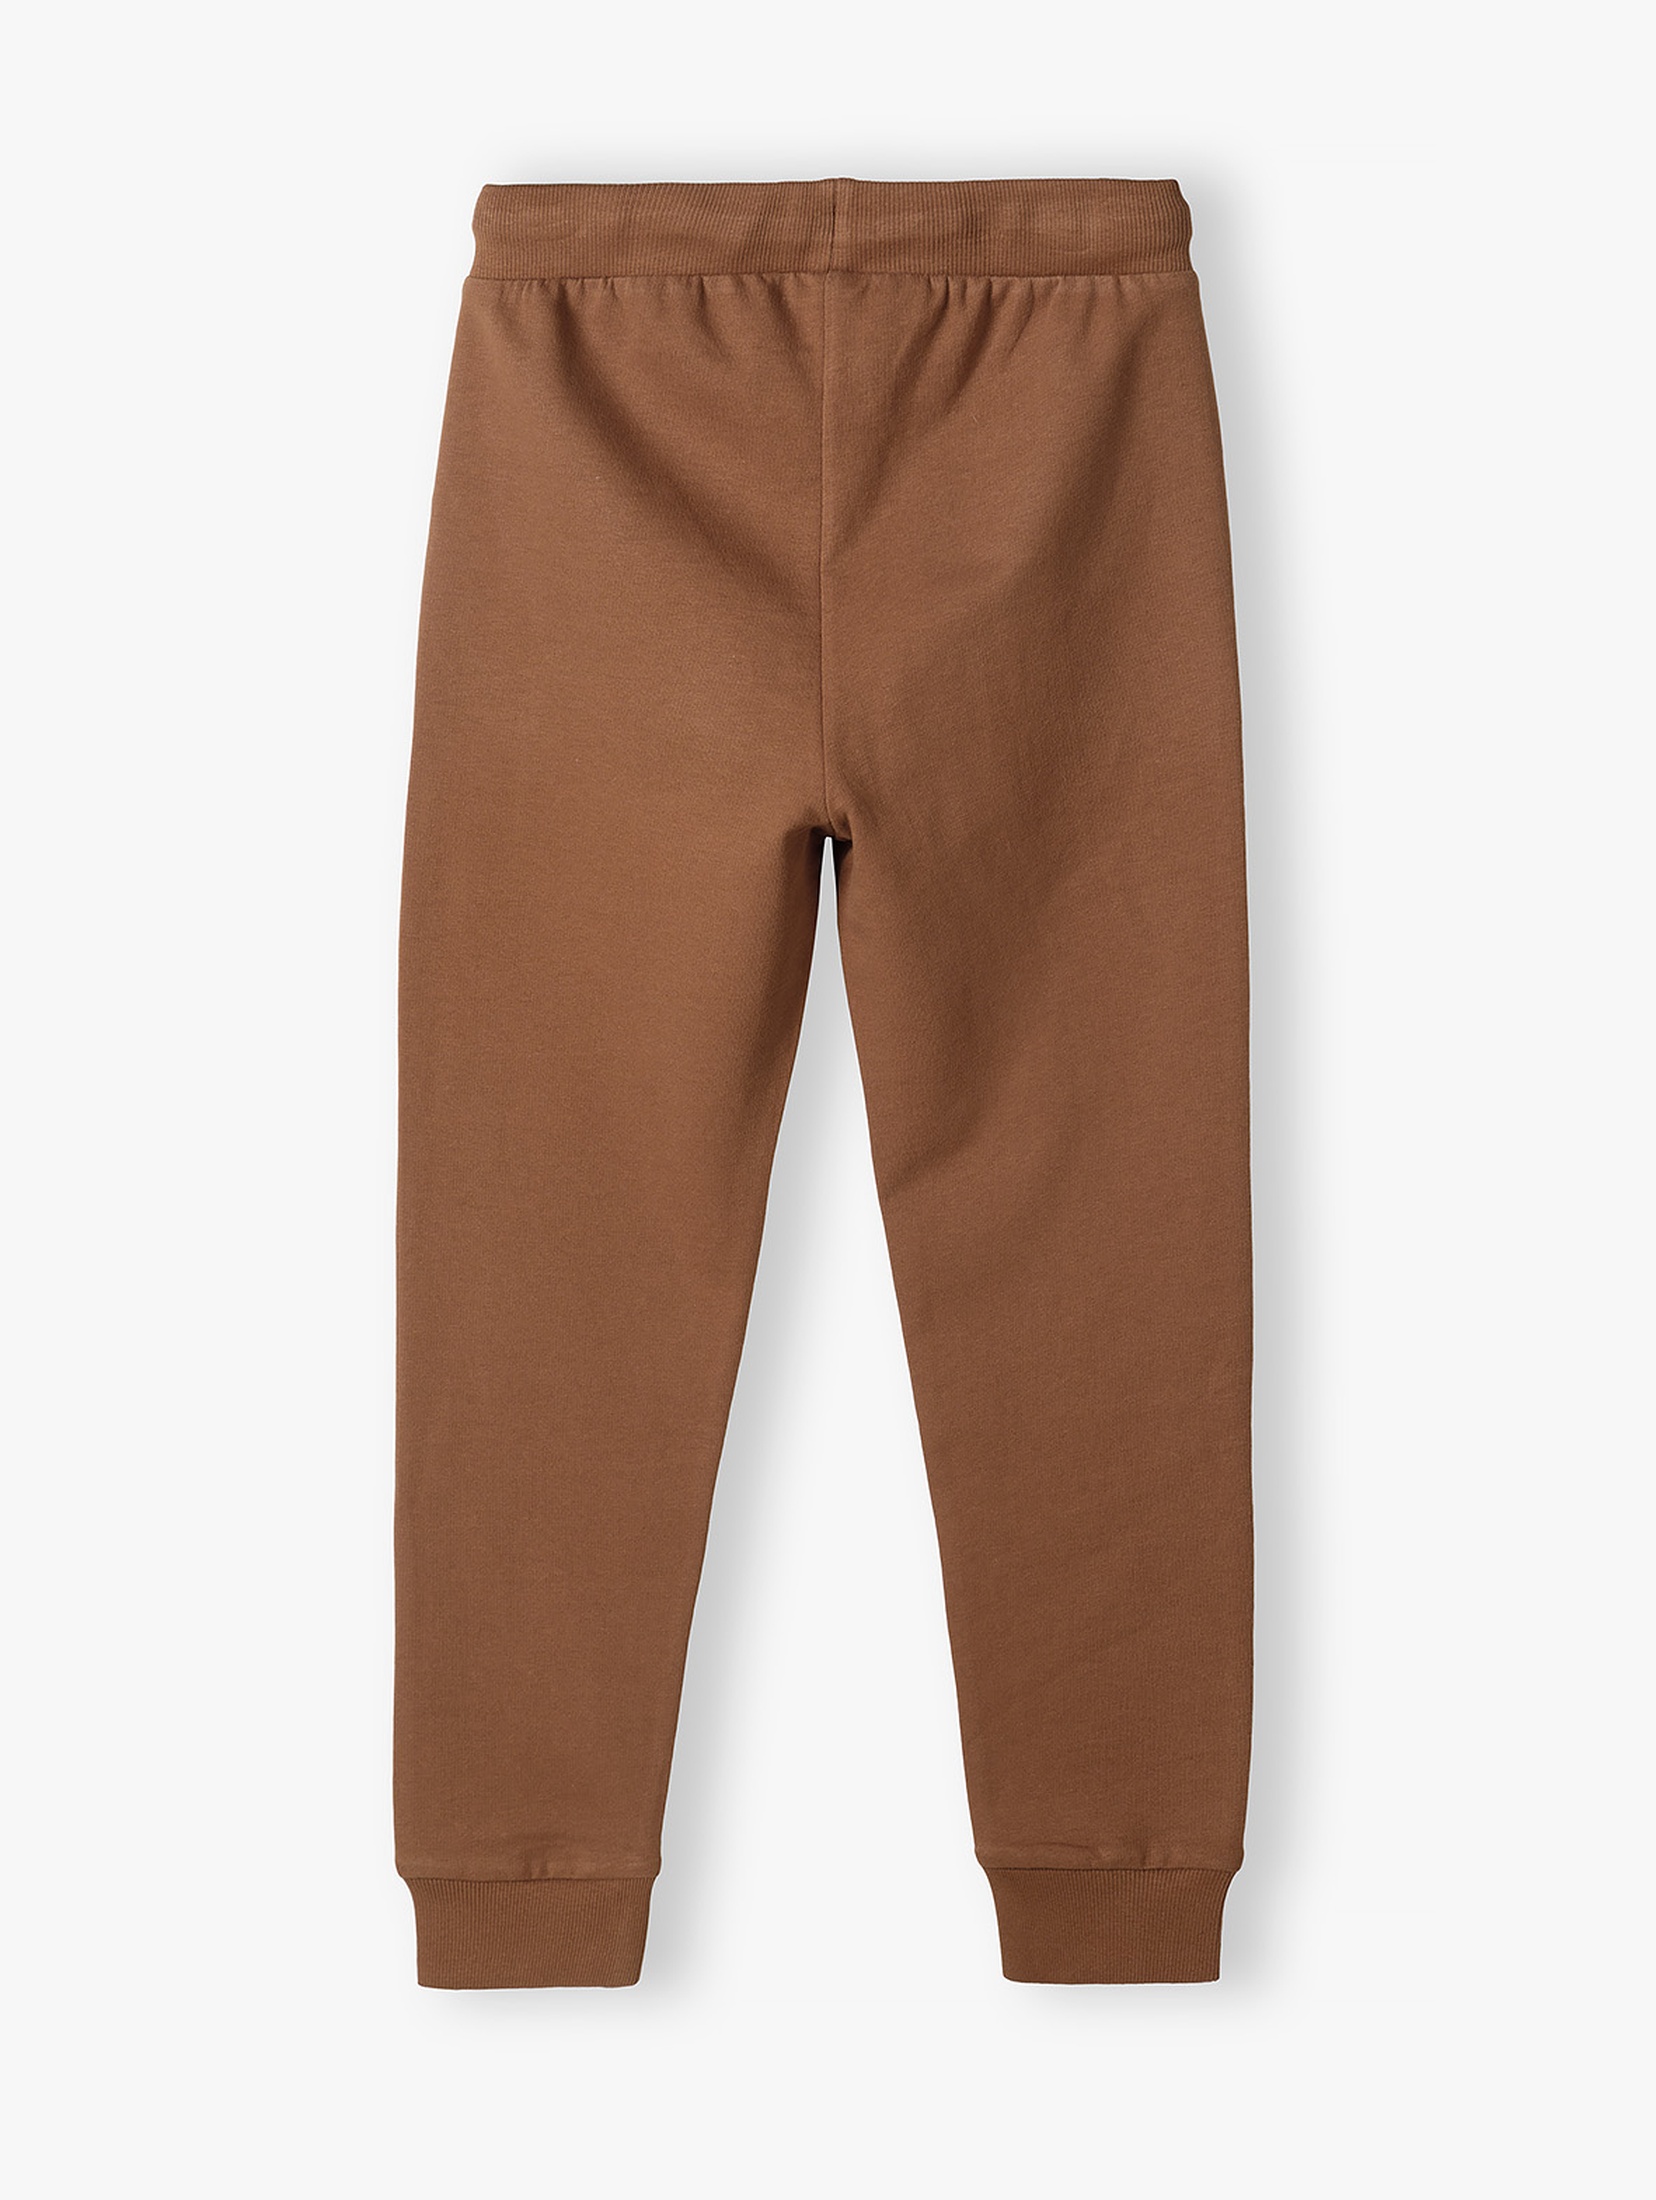 Brązowe spodnie dresowe slim fit chłopięce z napisem na nogawce